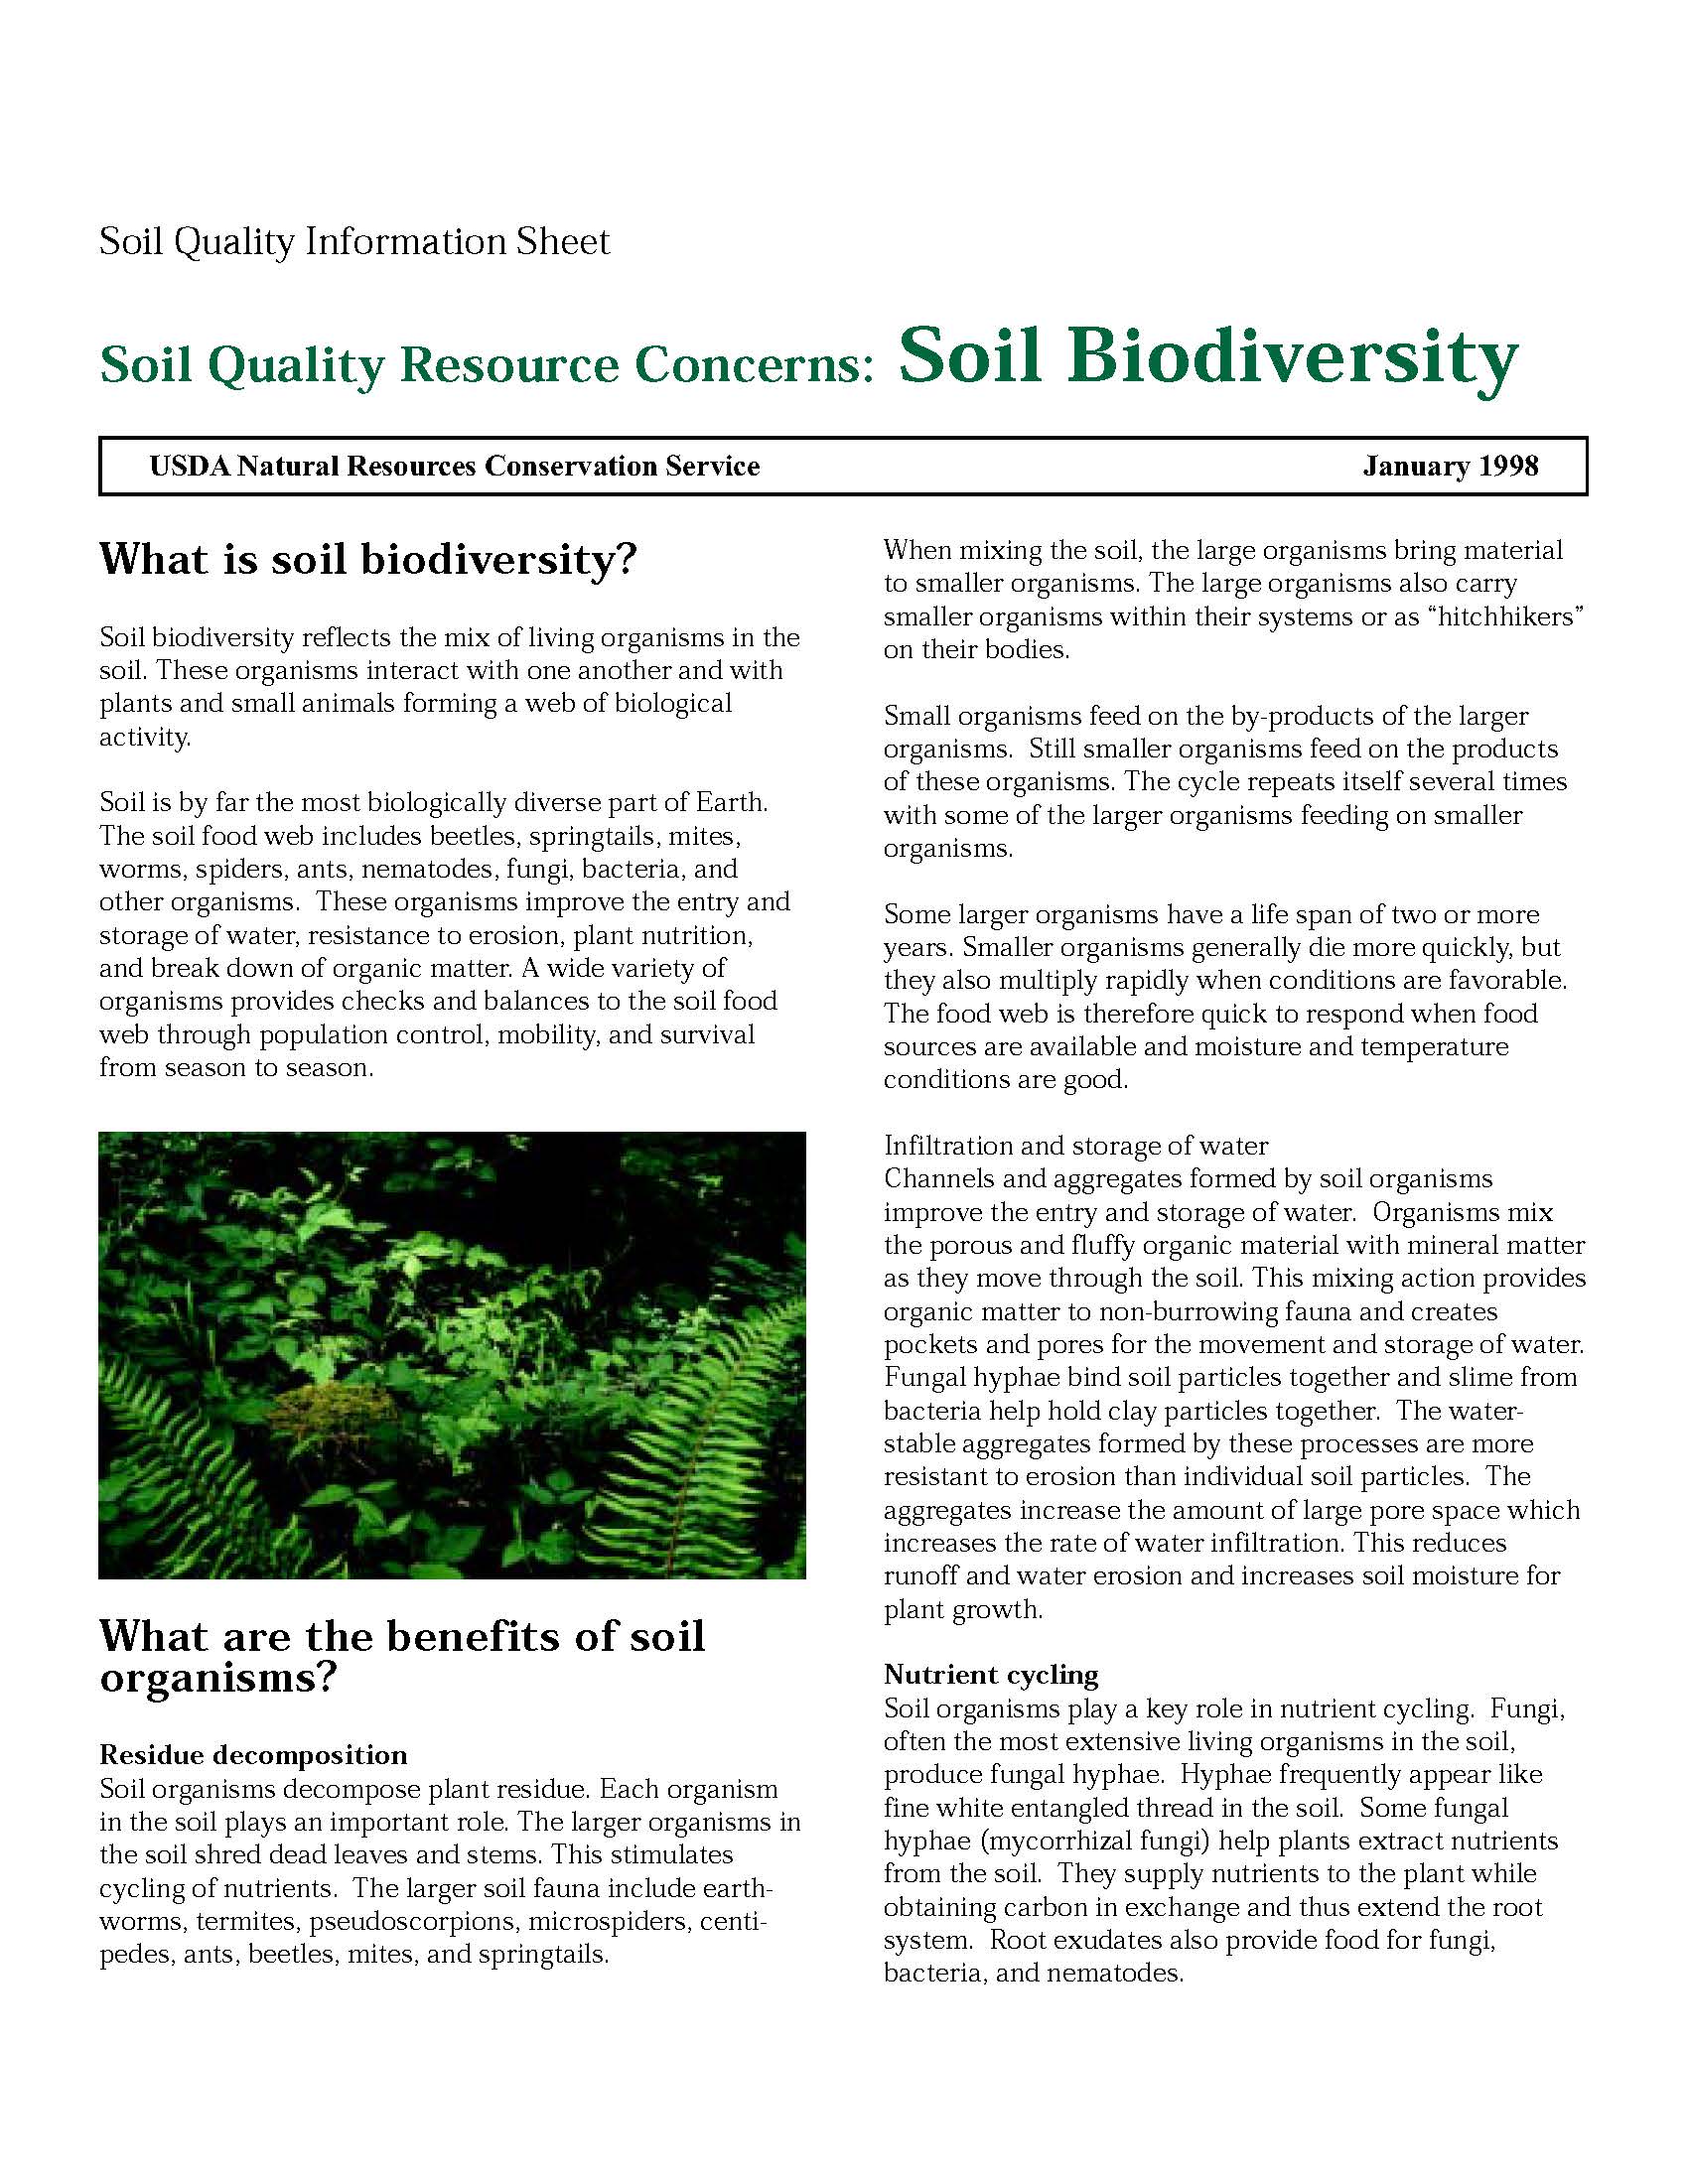 SQ-Resource Concerns-Soil Biodiversity